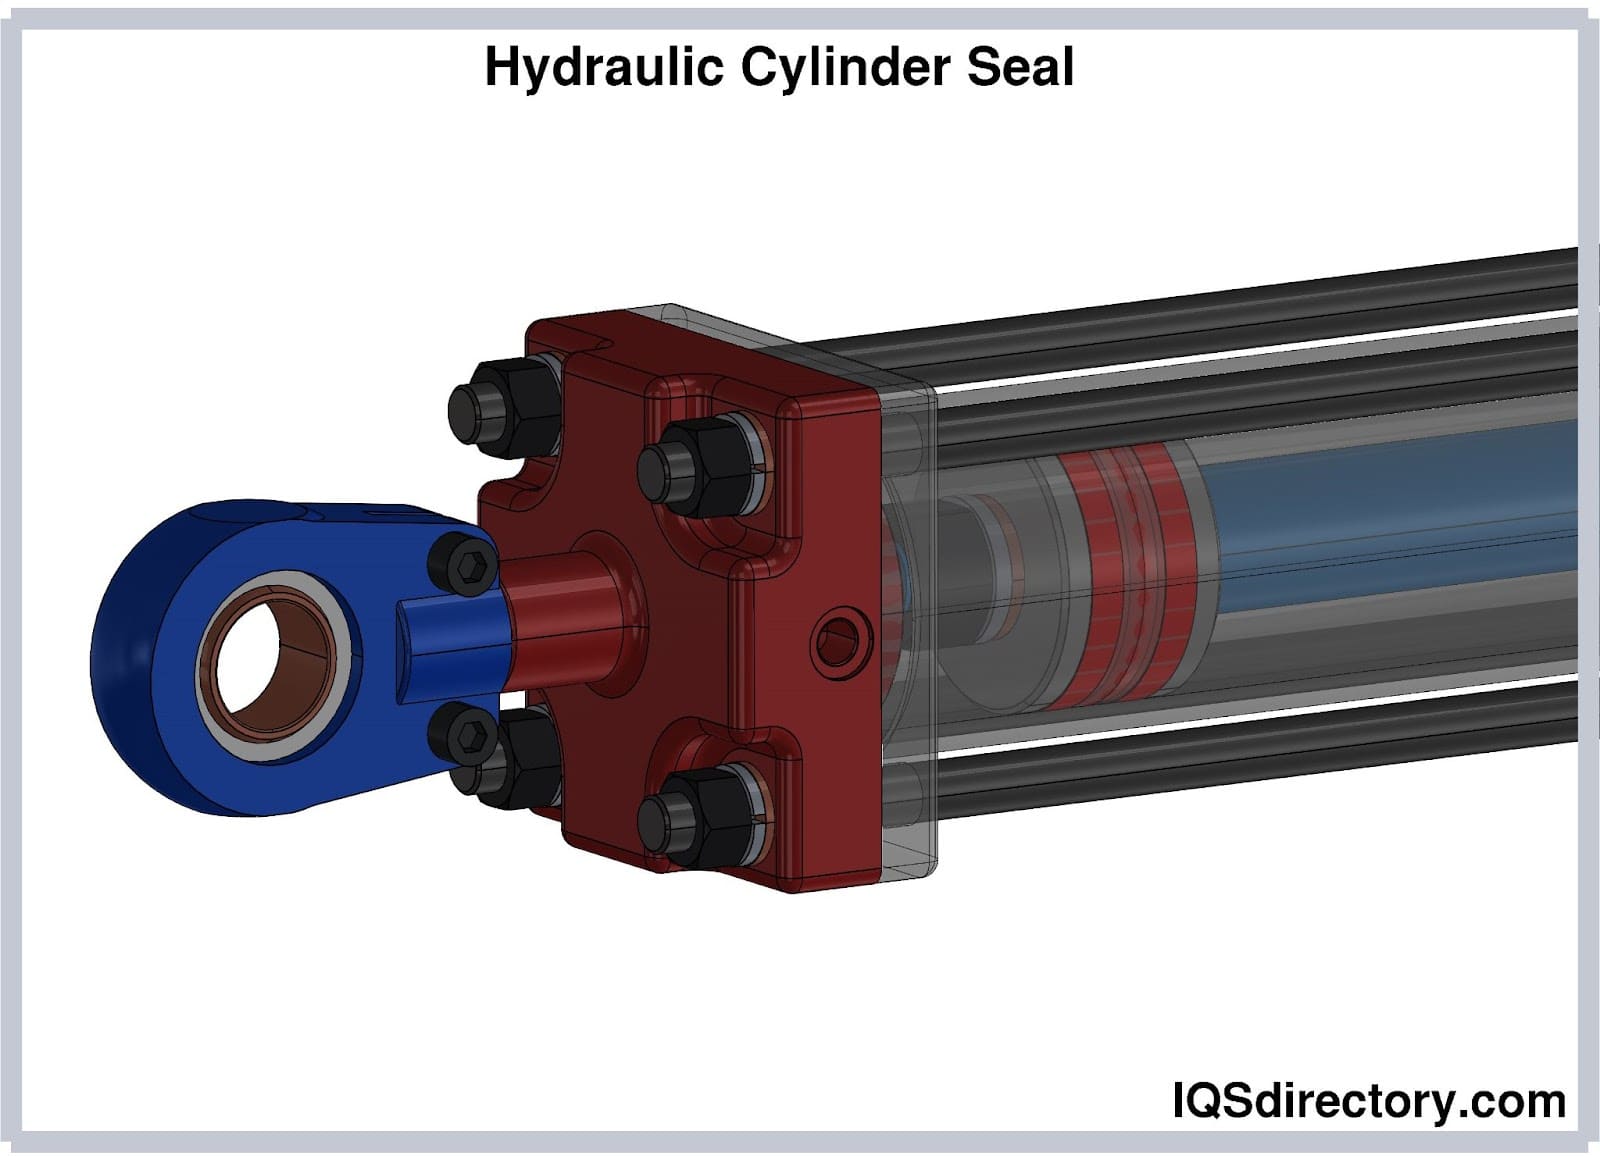  Hydraulic Cylinder Seal